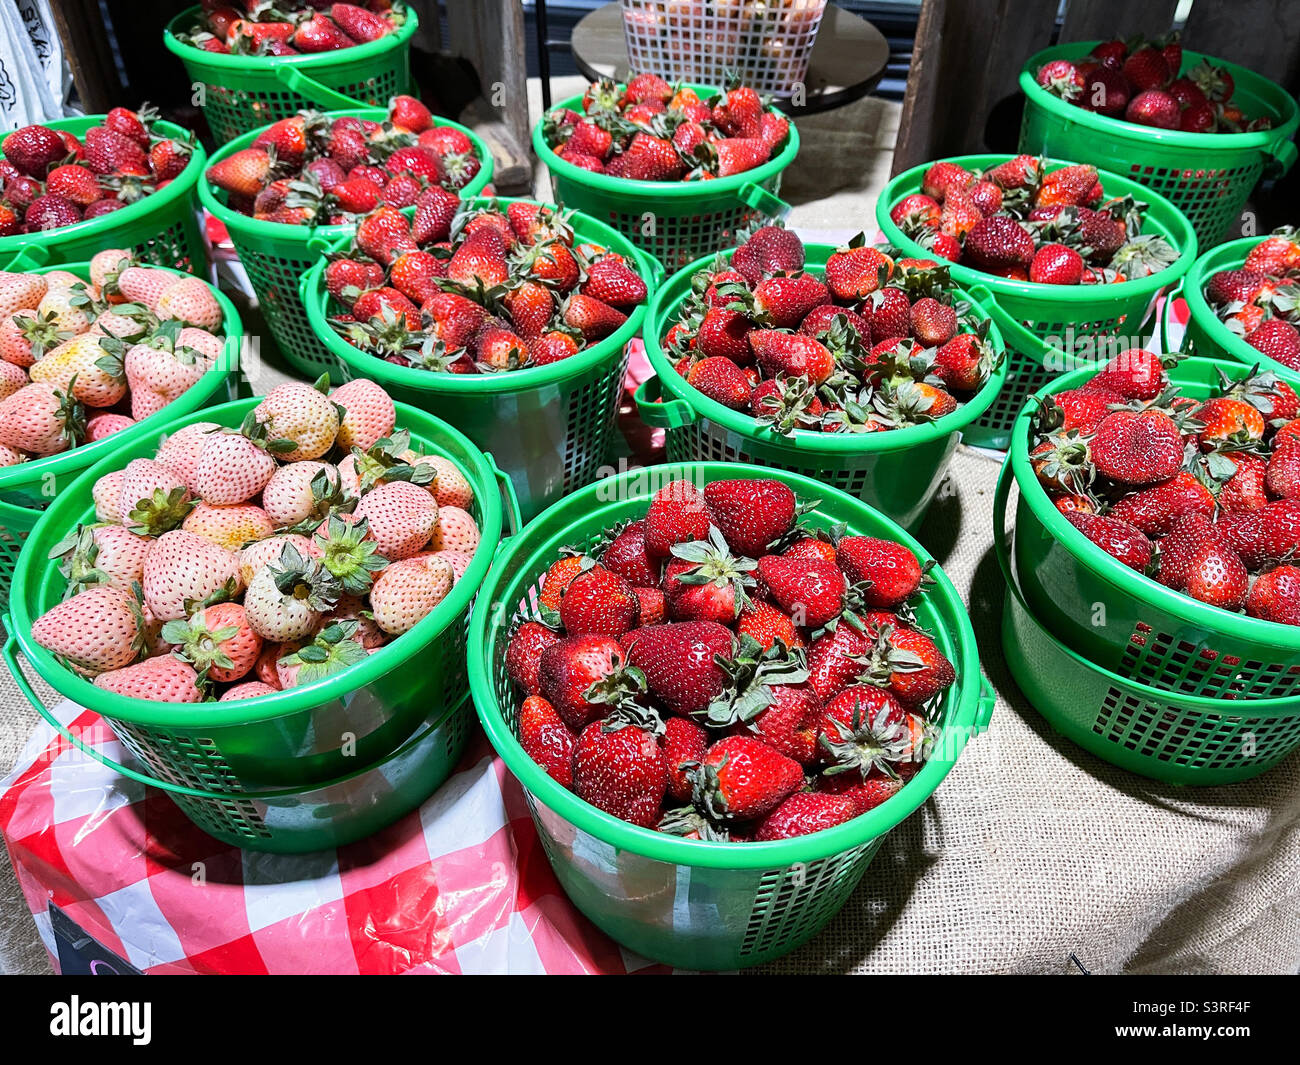 Fresas enteras orgánicas frescas recién escogidas en un usted elige su propio mercado de agricultores. Foto de stock